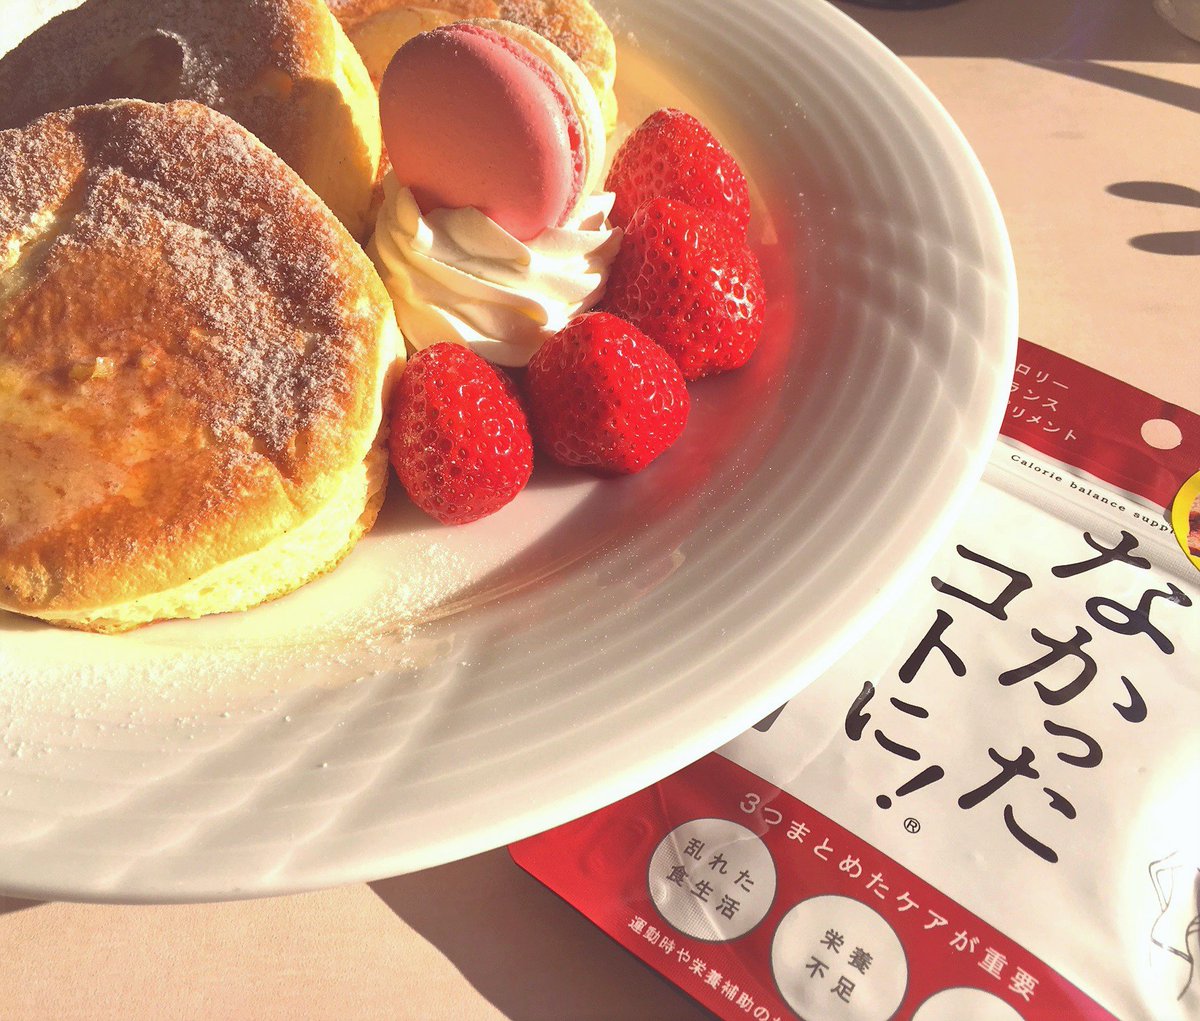 グラフィコ 公式 Pa Twitter 今日は パンケーキデー グラフィコの隣にある ホテルニューオータニイン東京 のラウンジでパンケーキ を食べました ホテルニューオータニ Satsuki と同じパンケーキだそう ふわふわ ふわふわ 美味でした もちろん なかった